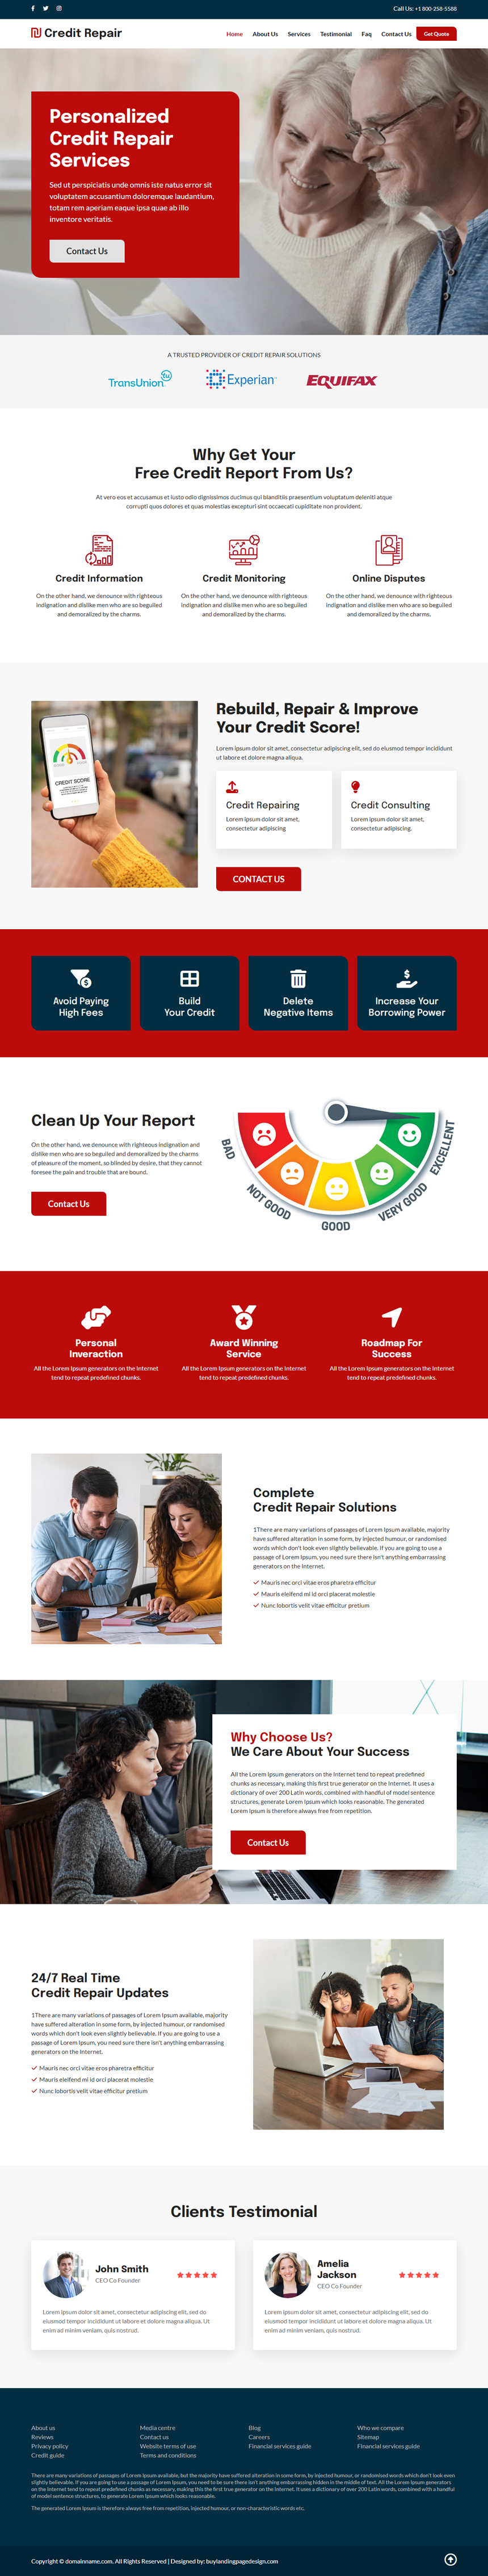 personalized credit repair responsive website design